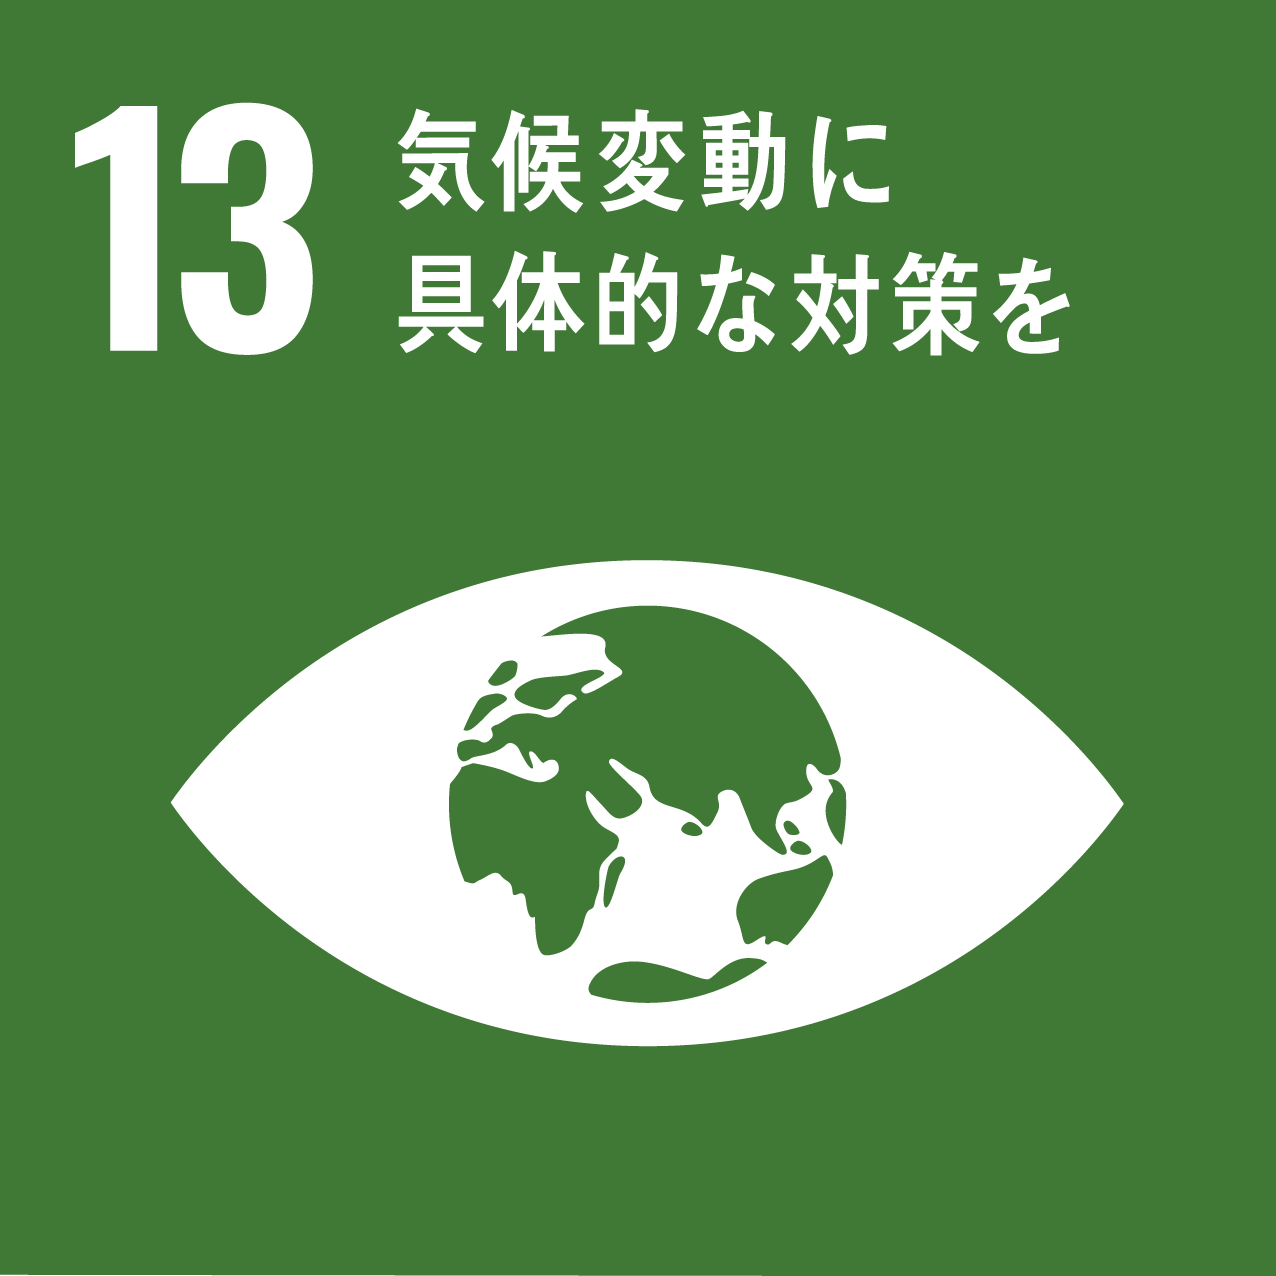 SDGs_目標13「気候変動に具体的な対策を」アイコン